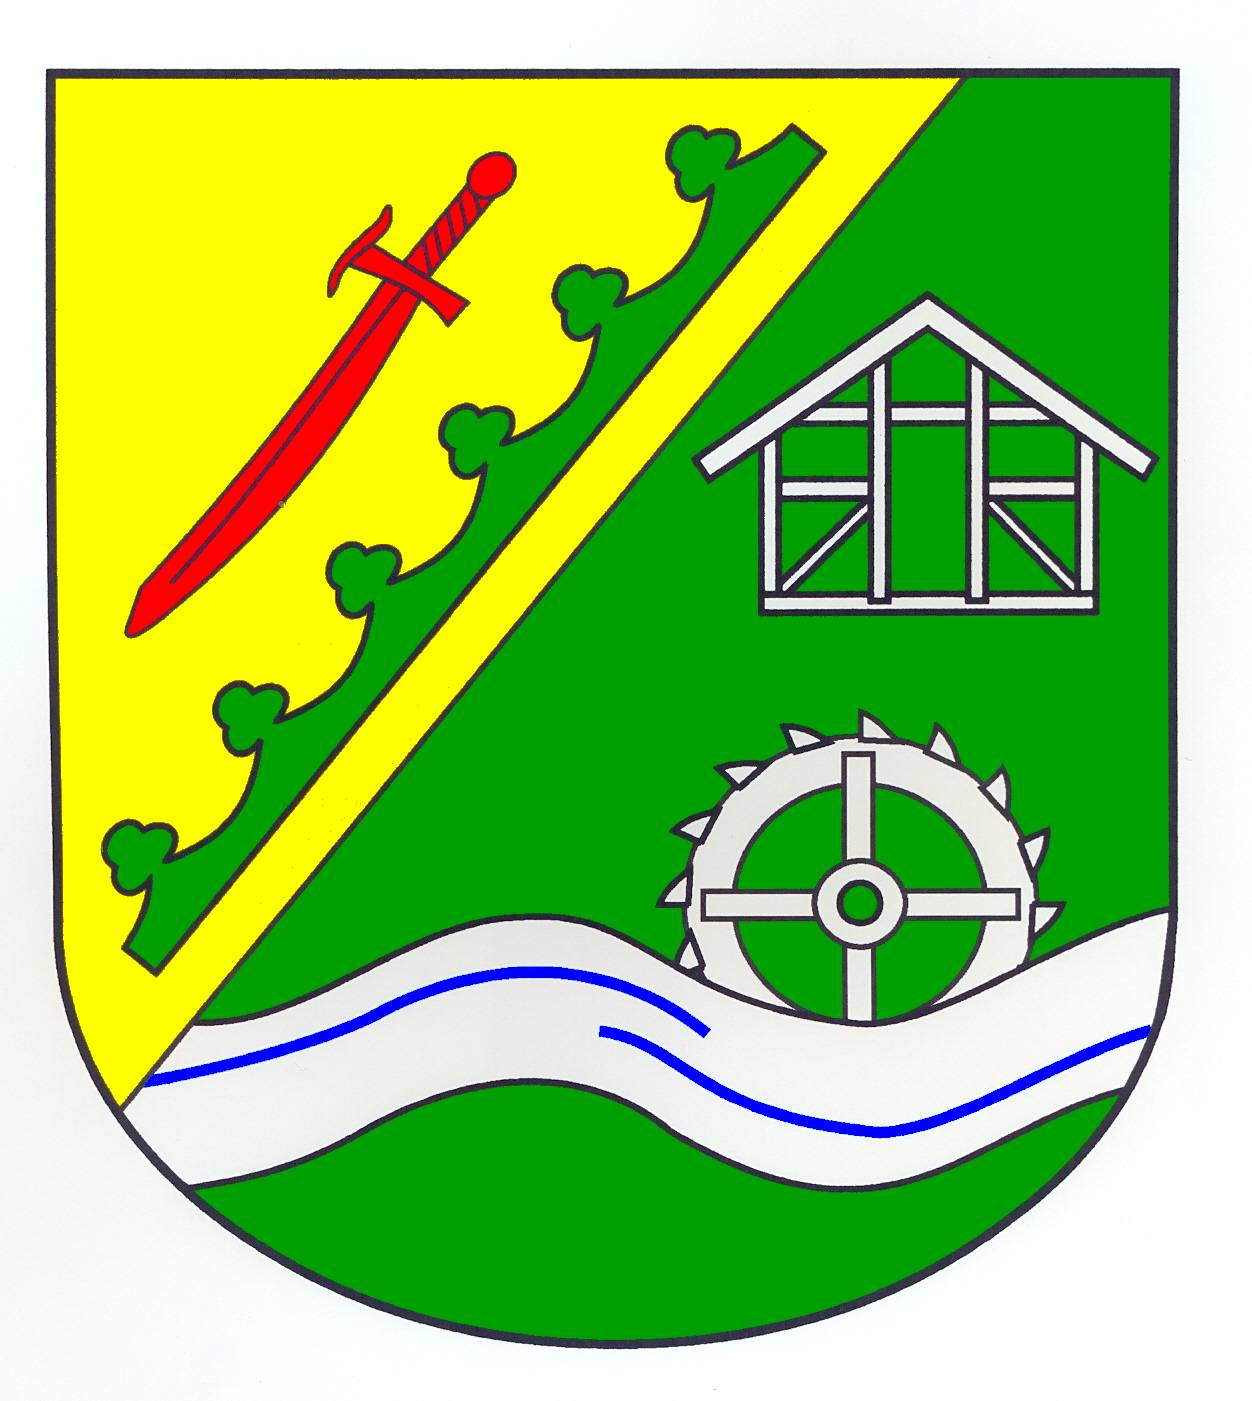 Wappen Gemeinde Groß Boden, Kreis Herzogtum Lauenburg